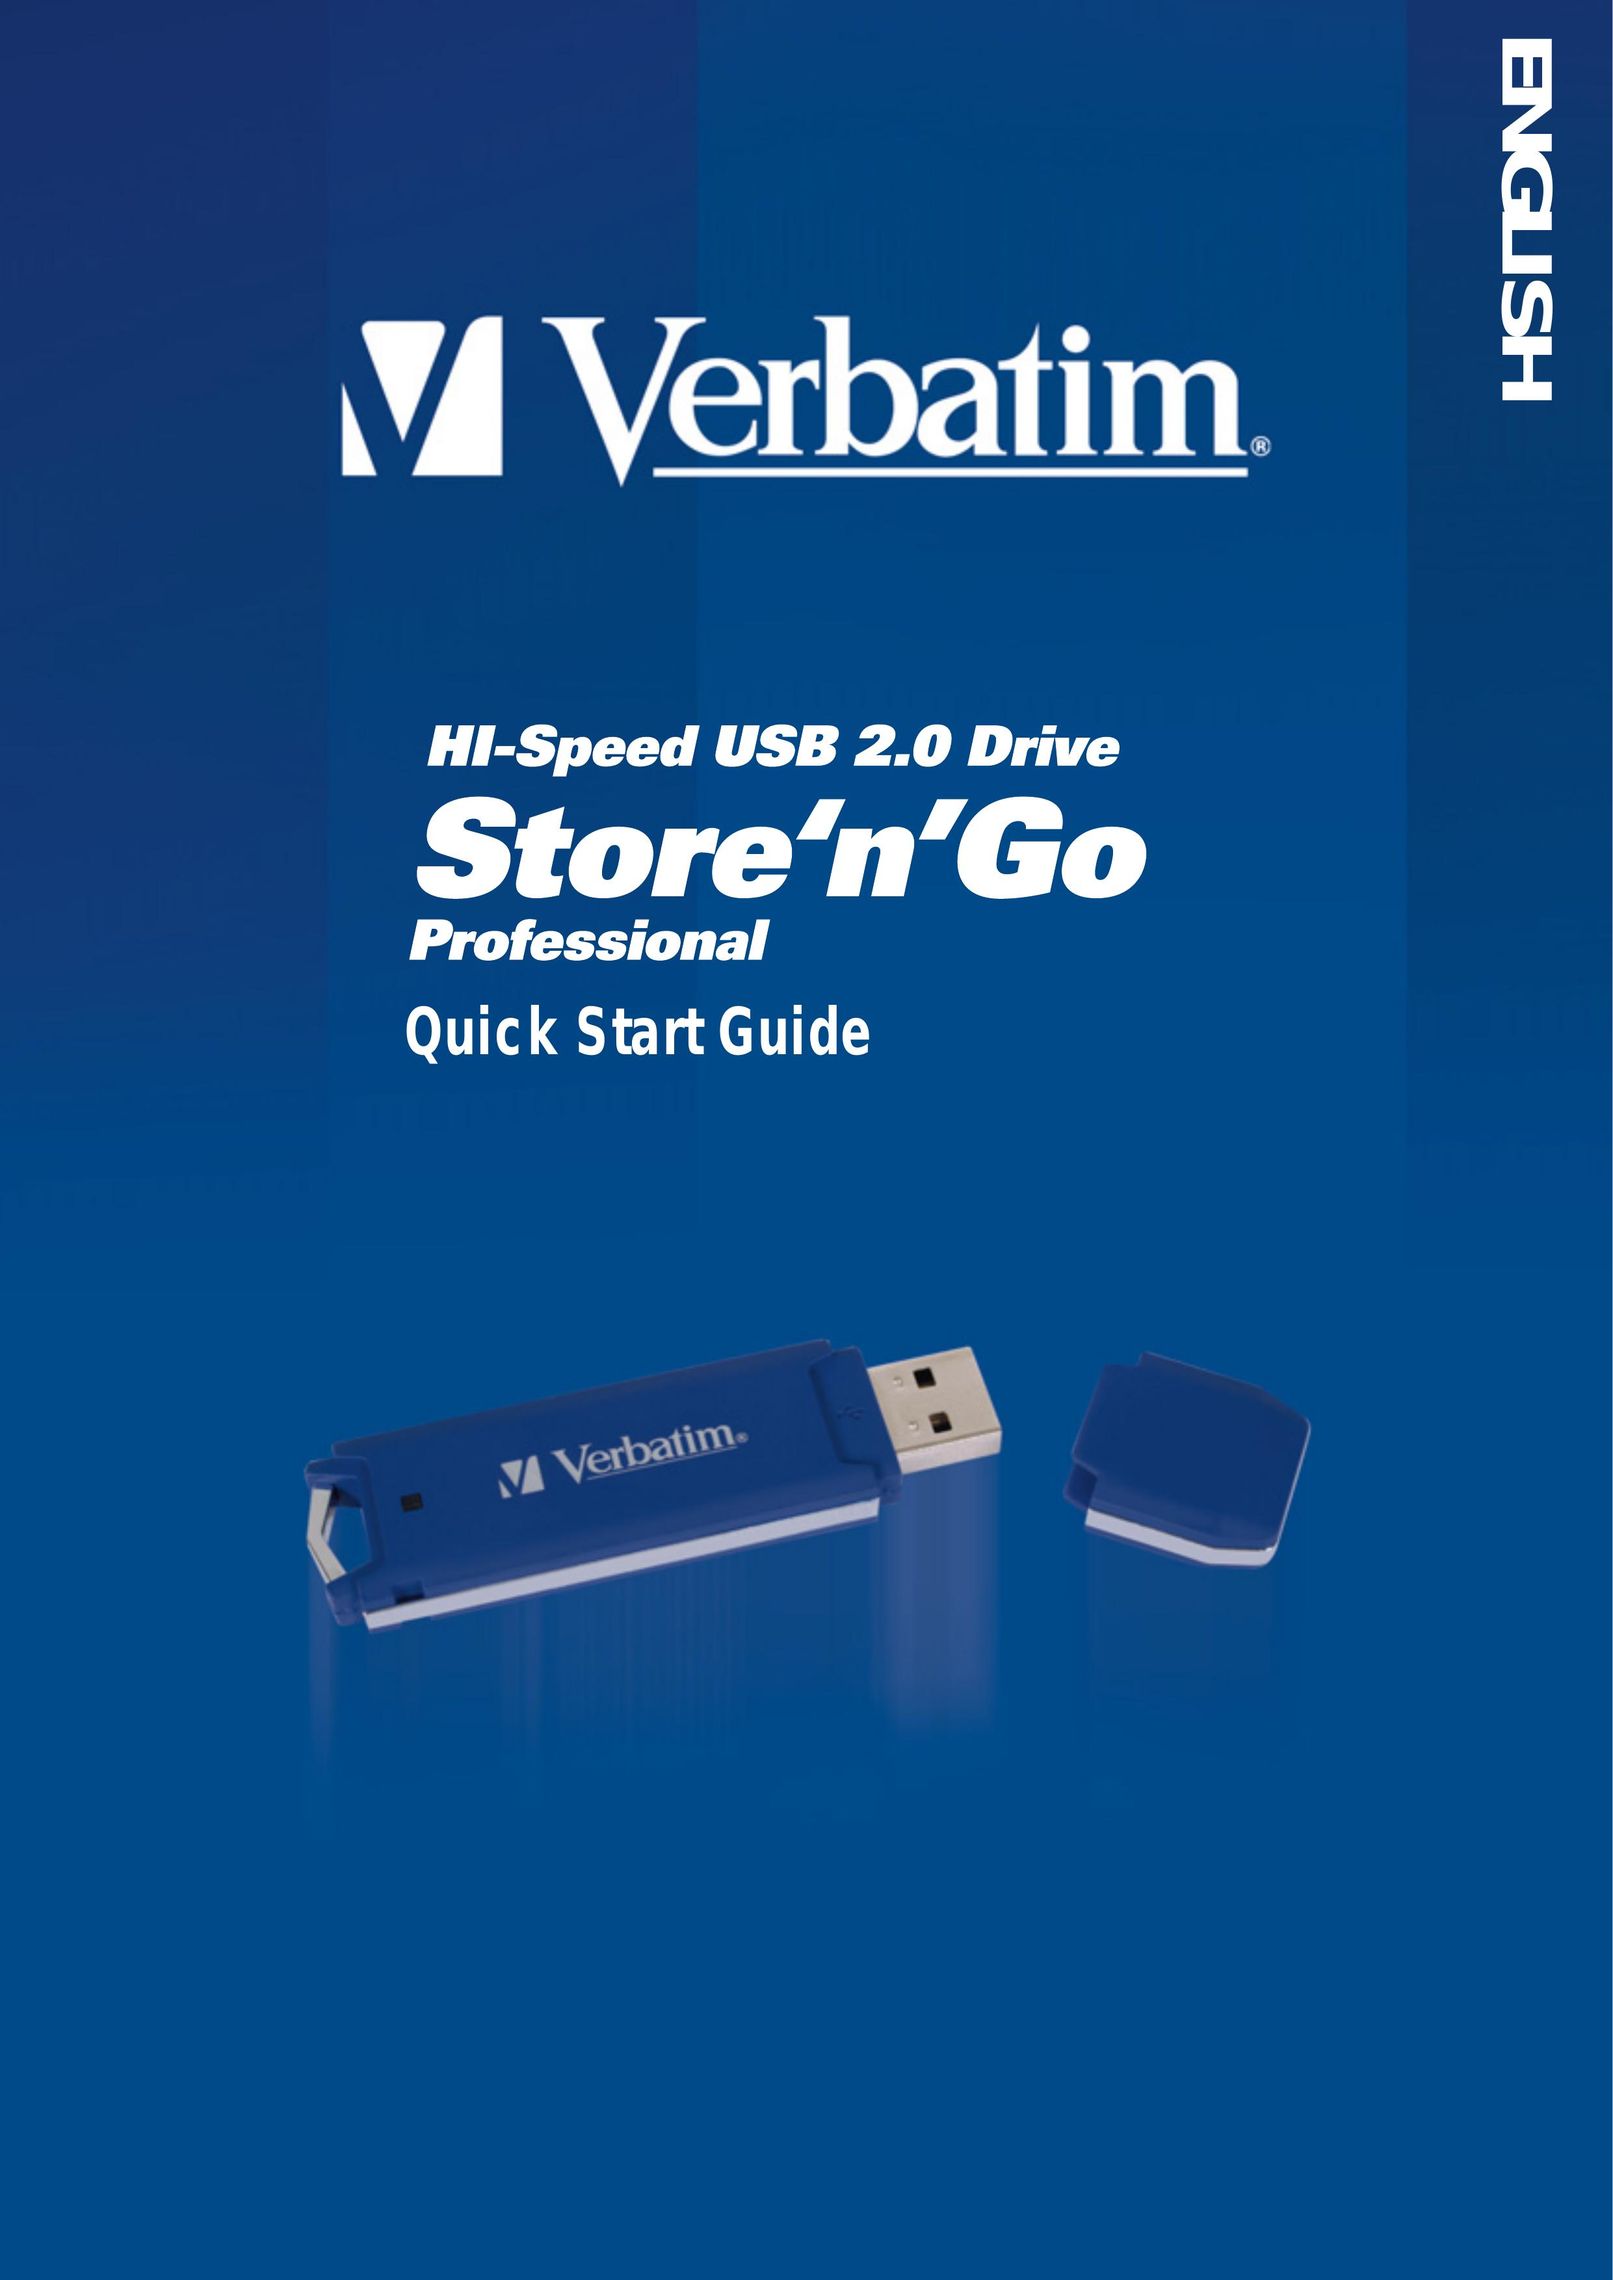 Verbatim Hi-Speed USB Computer Drive User Manual